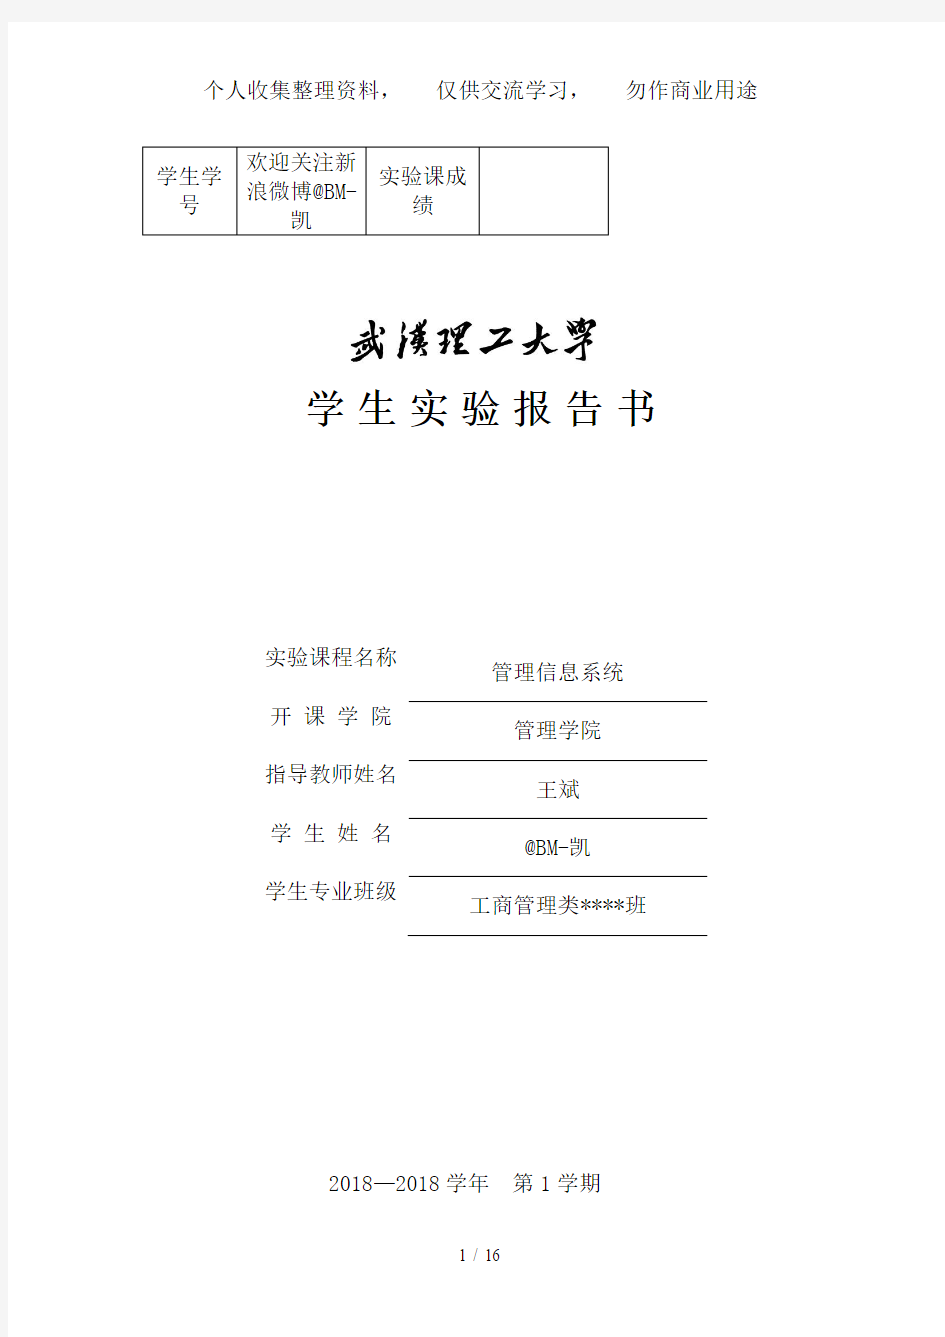 武汉理工大学管理信息系统分析方案